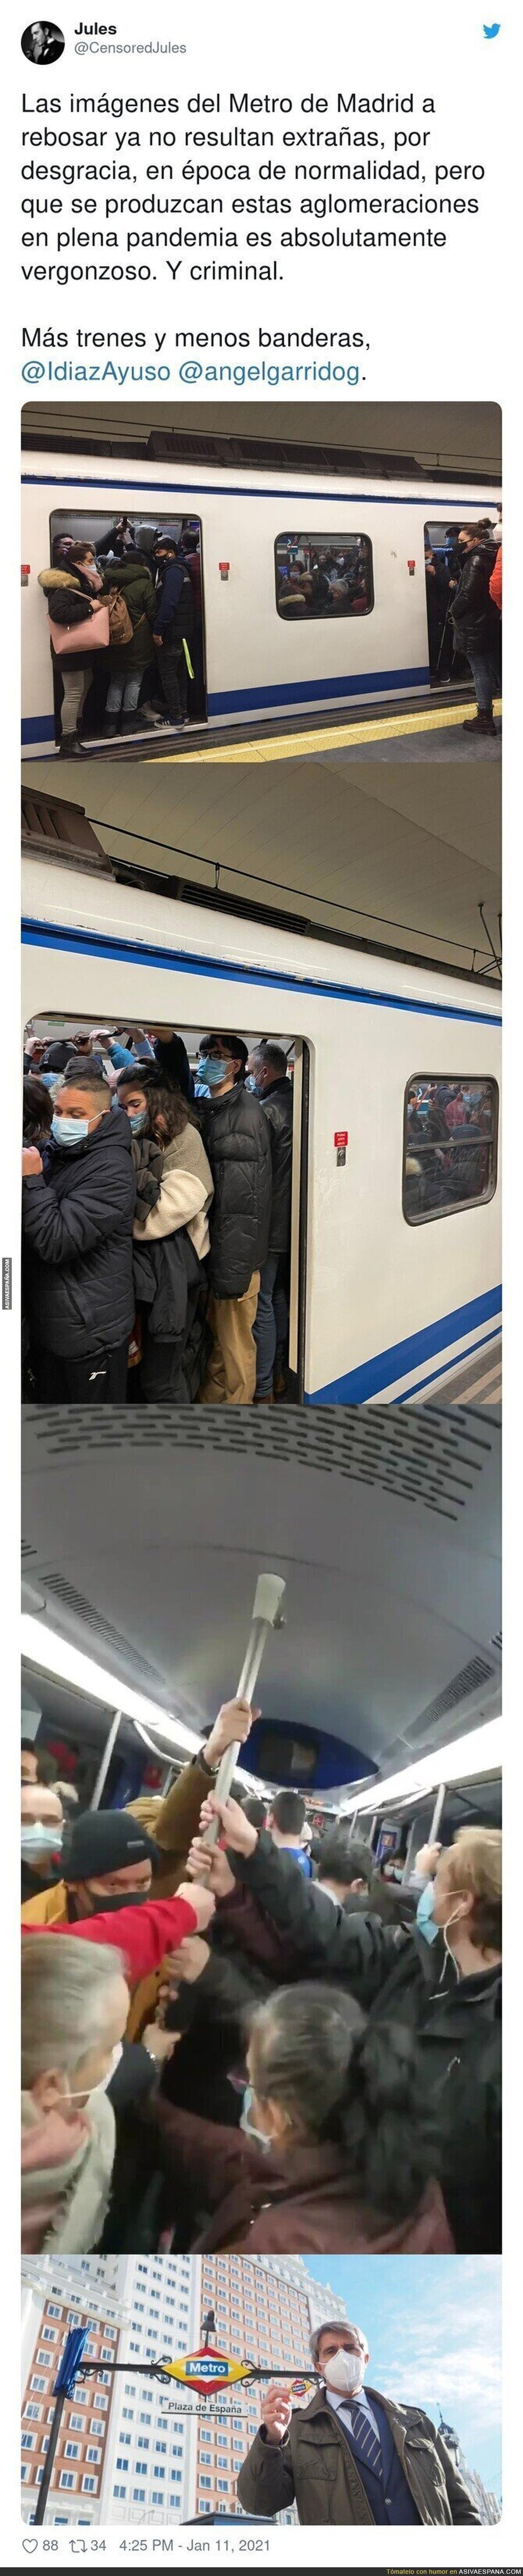 Vergüenza mundial por como Madrid trata a sus habitantes metiéndolos enlatados en el Metro